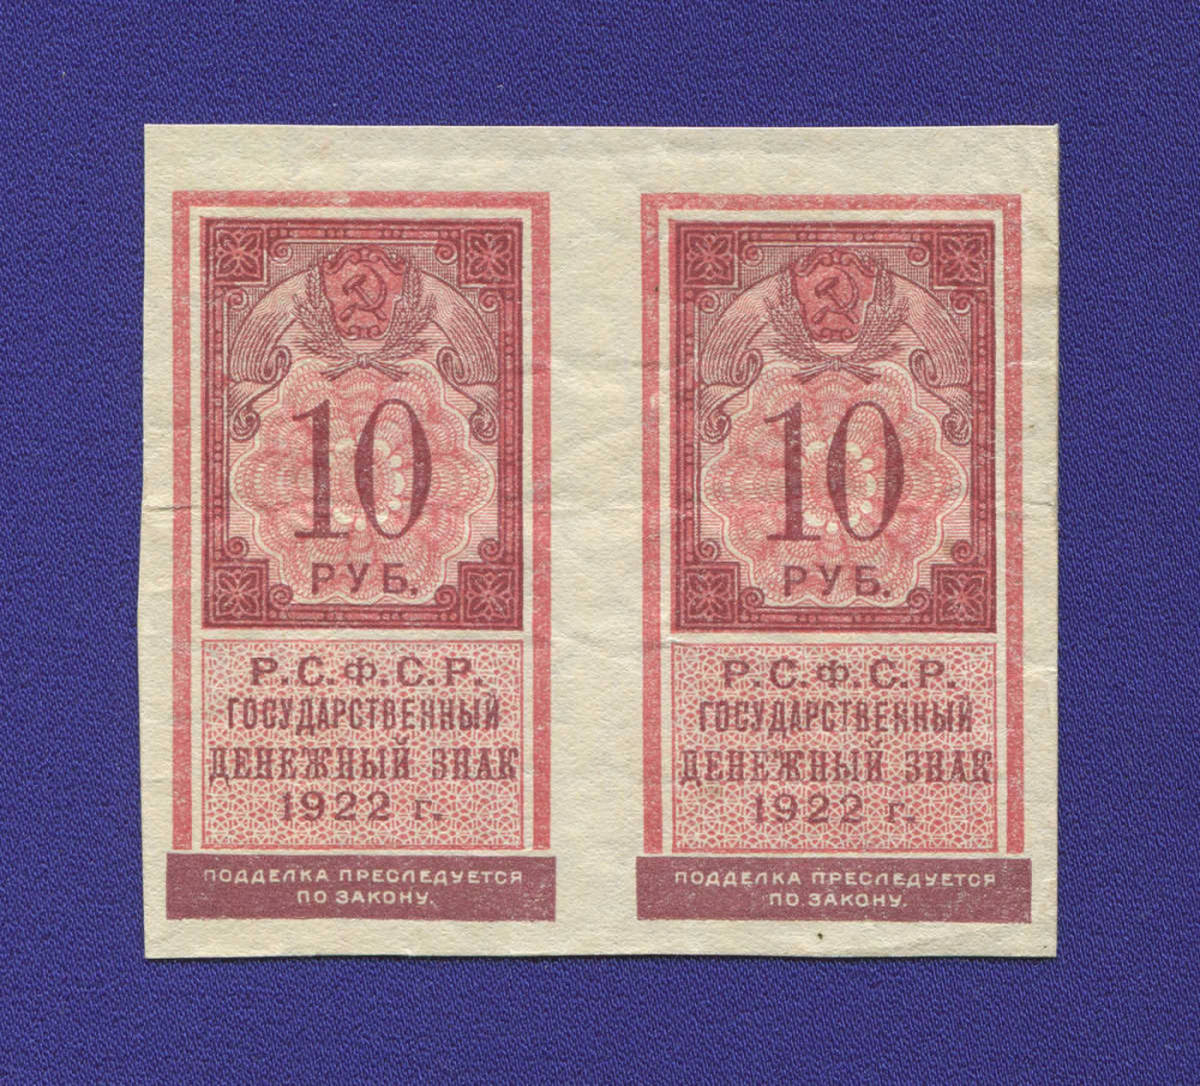 РСФСР 10 рублей 1922 года / XF-aUNC / Сцепка 2 штуки - 12195